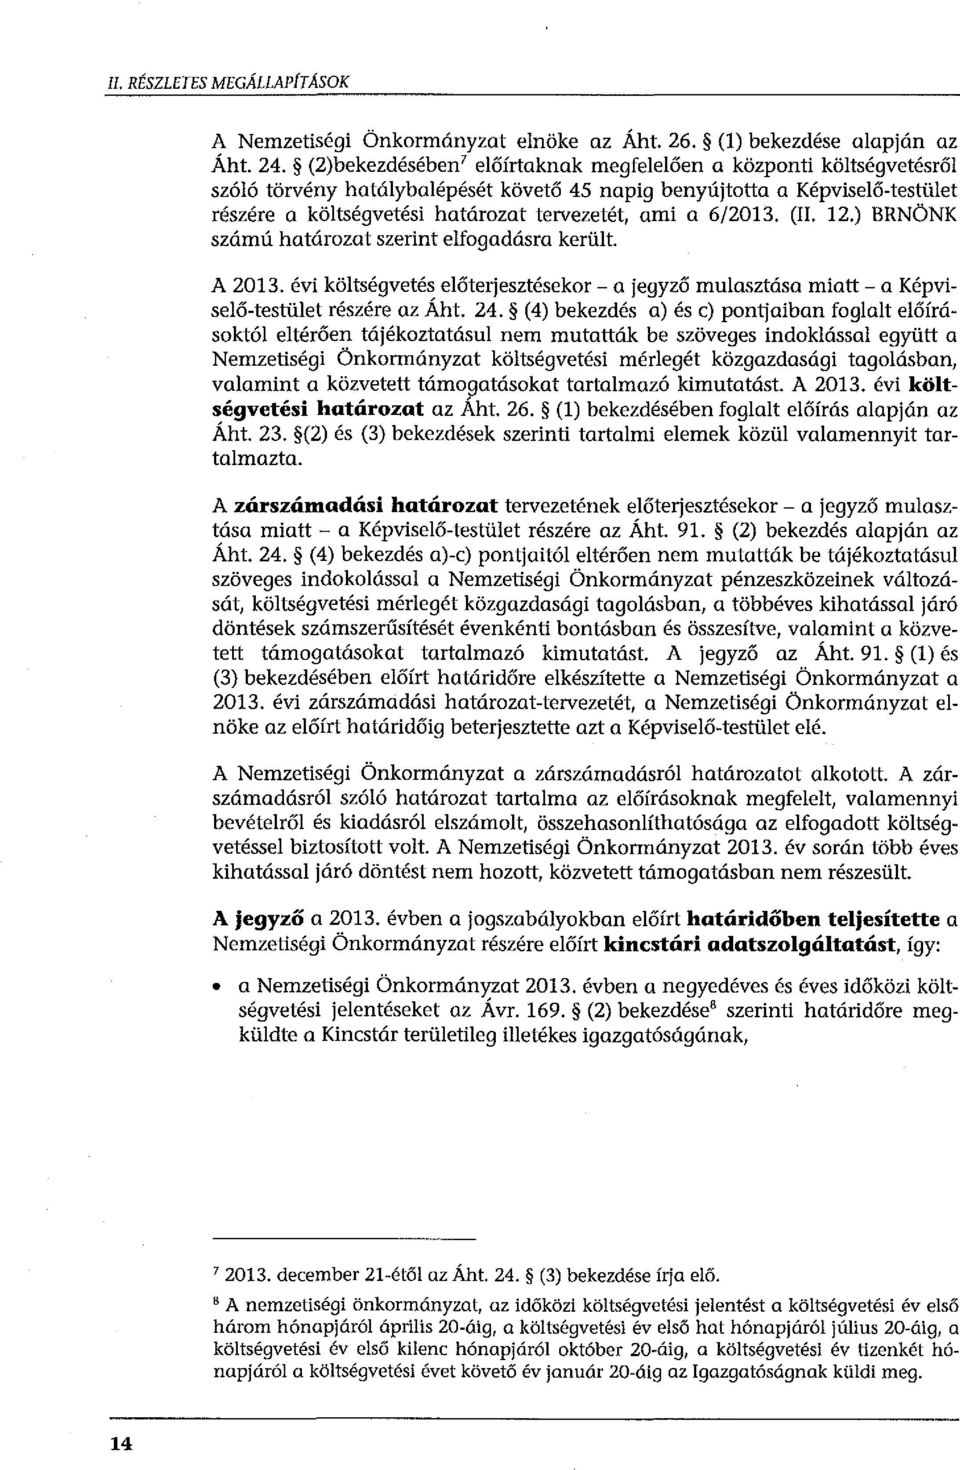 a 6/2013. (II. 12.) BRNÖNK szám ú határozat szerint elfogadásra került. A 2013. évi költségvetés előterjesztésekor- a jegyző mulasztása miatt- a Képviselő-testület részére az Áht. 24.